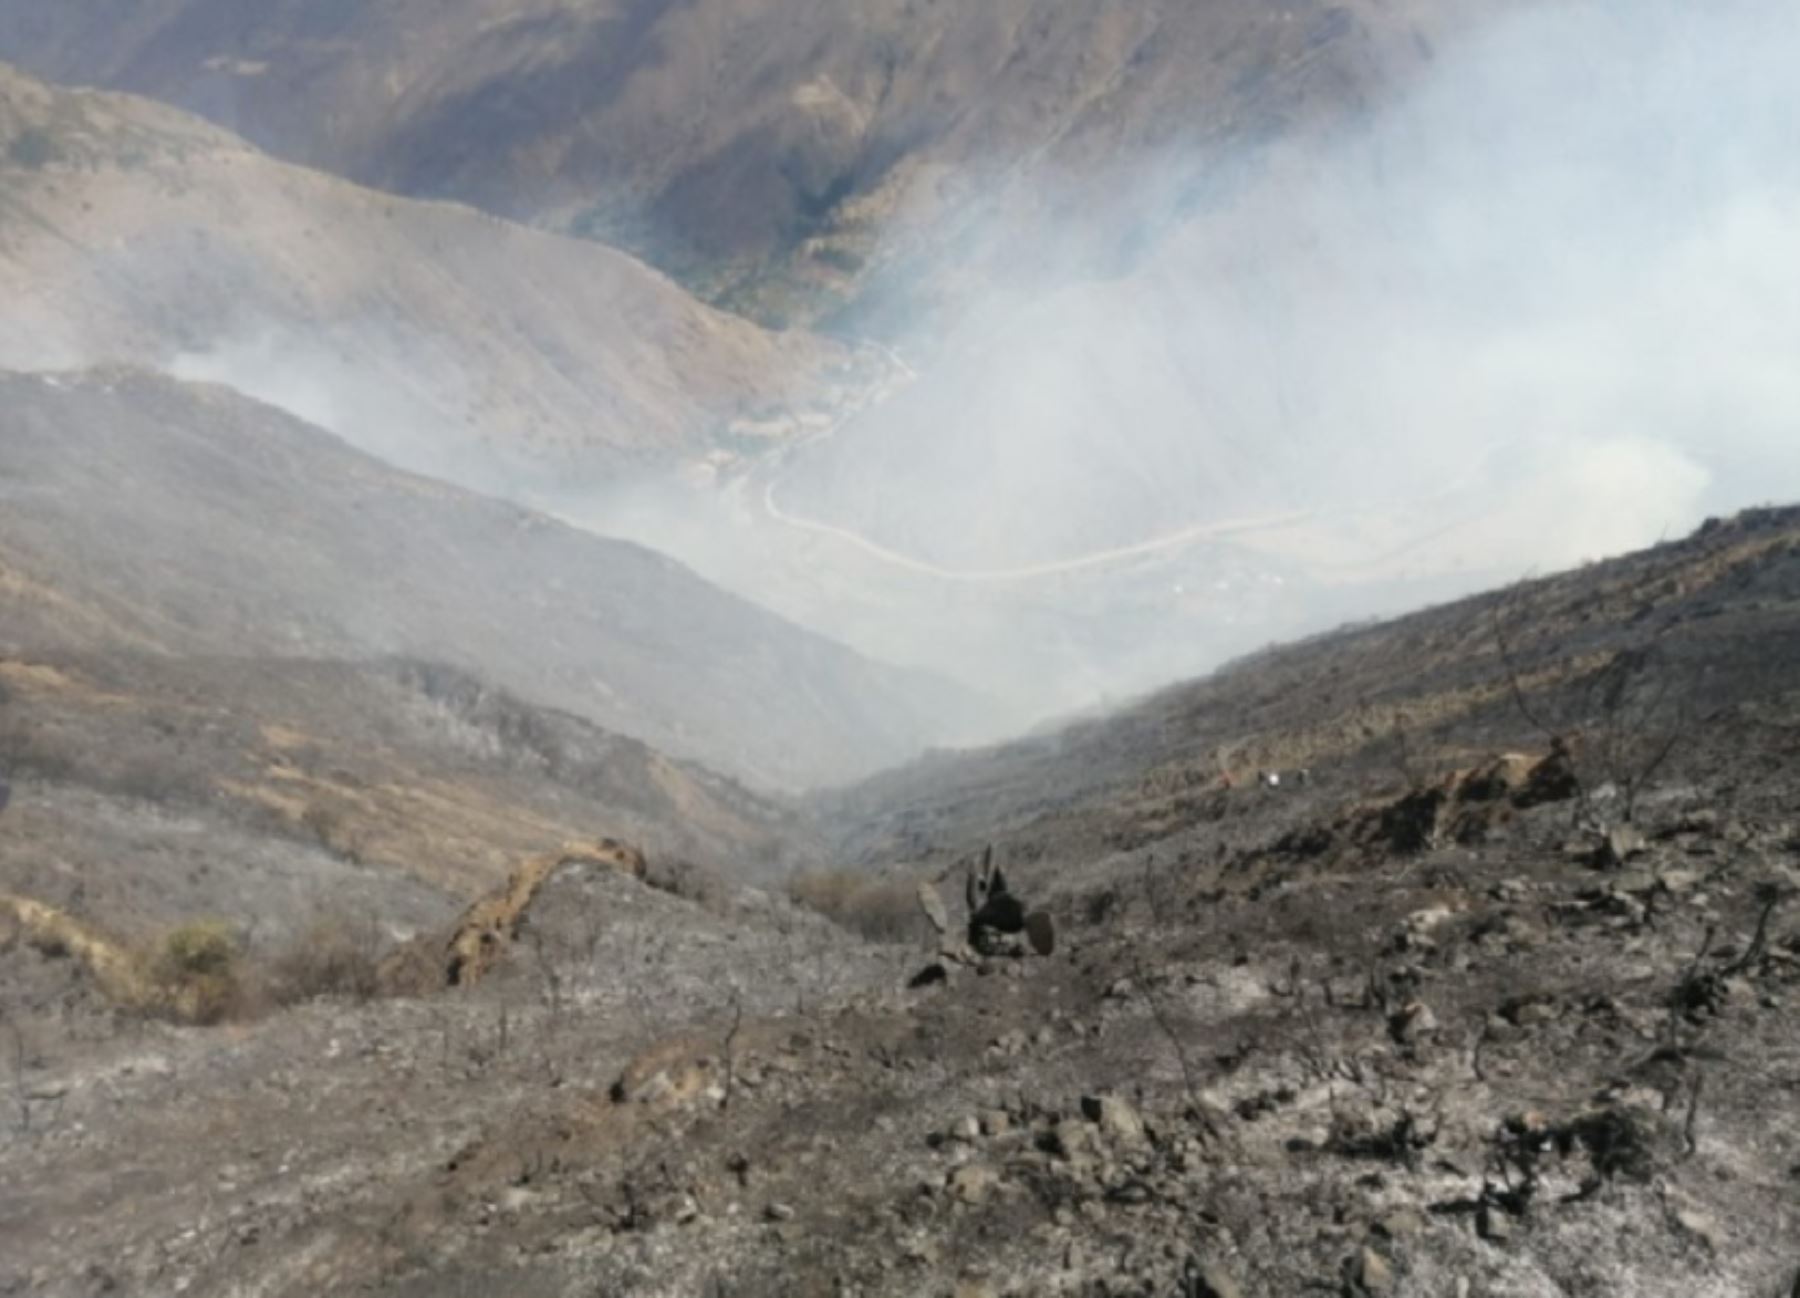 Un incendio forestal de gran magnitud provocó la muerte de dos pastoras y más de 50 animales, entre ovejas y cabras, en el centro poblado de Tangor, ubicado a 30 minutos del distrito de Páucar,  provincia de Daniel Alcides Carrión, en el departamento de Pasco.